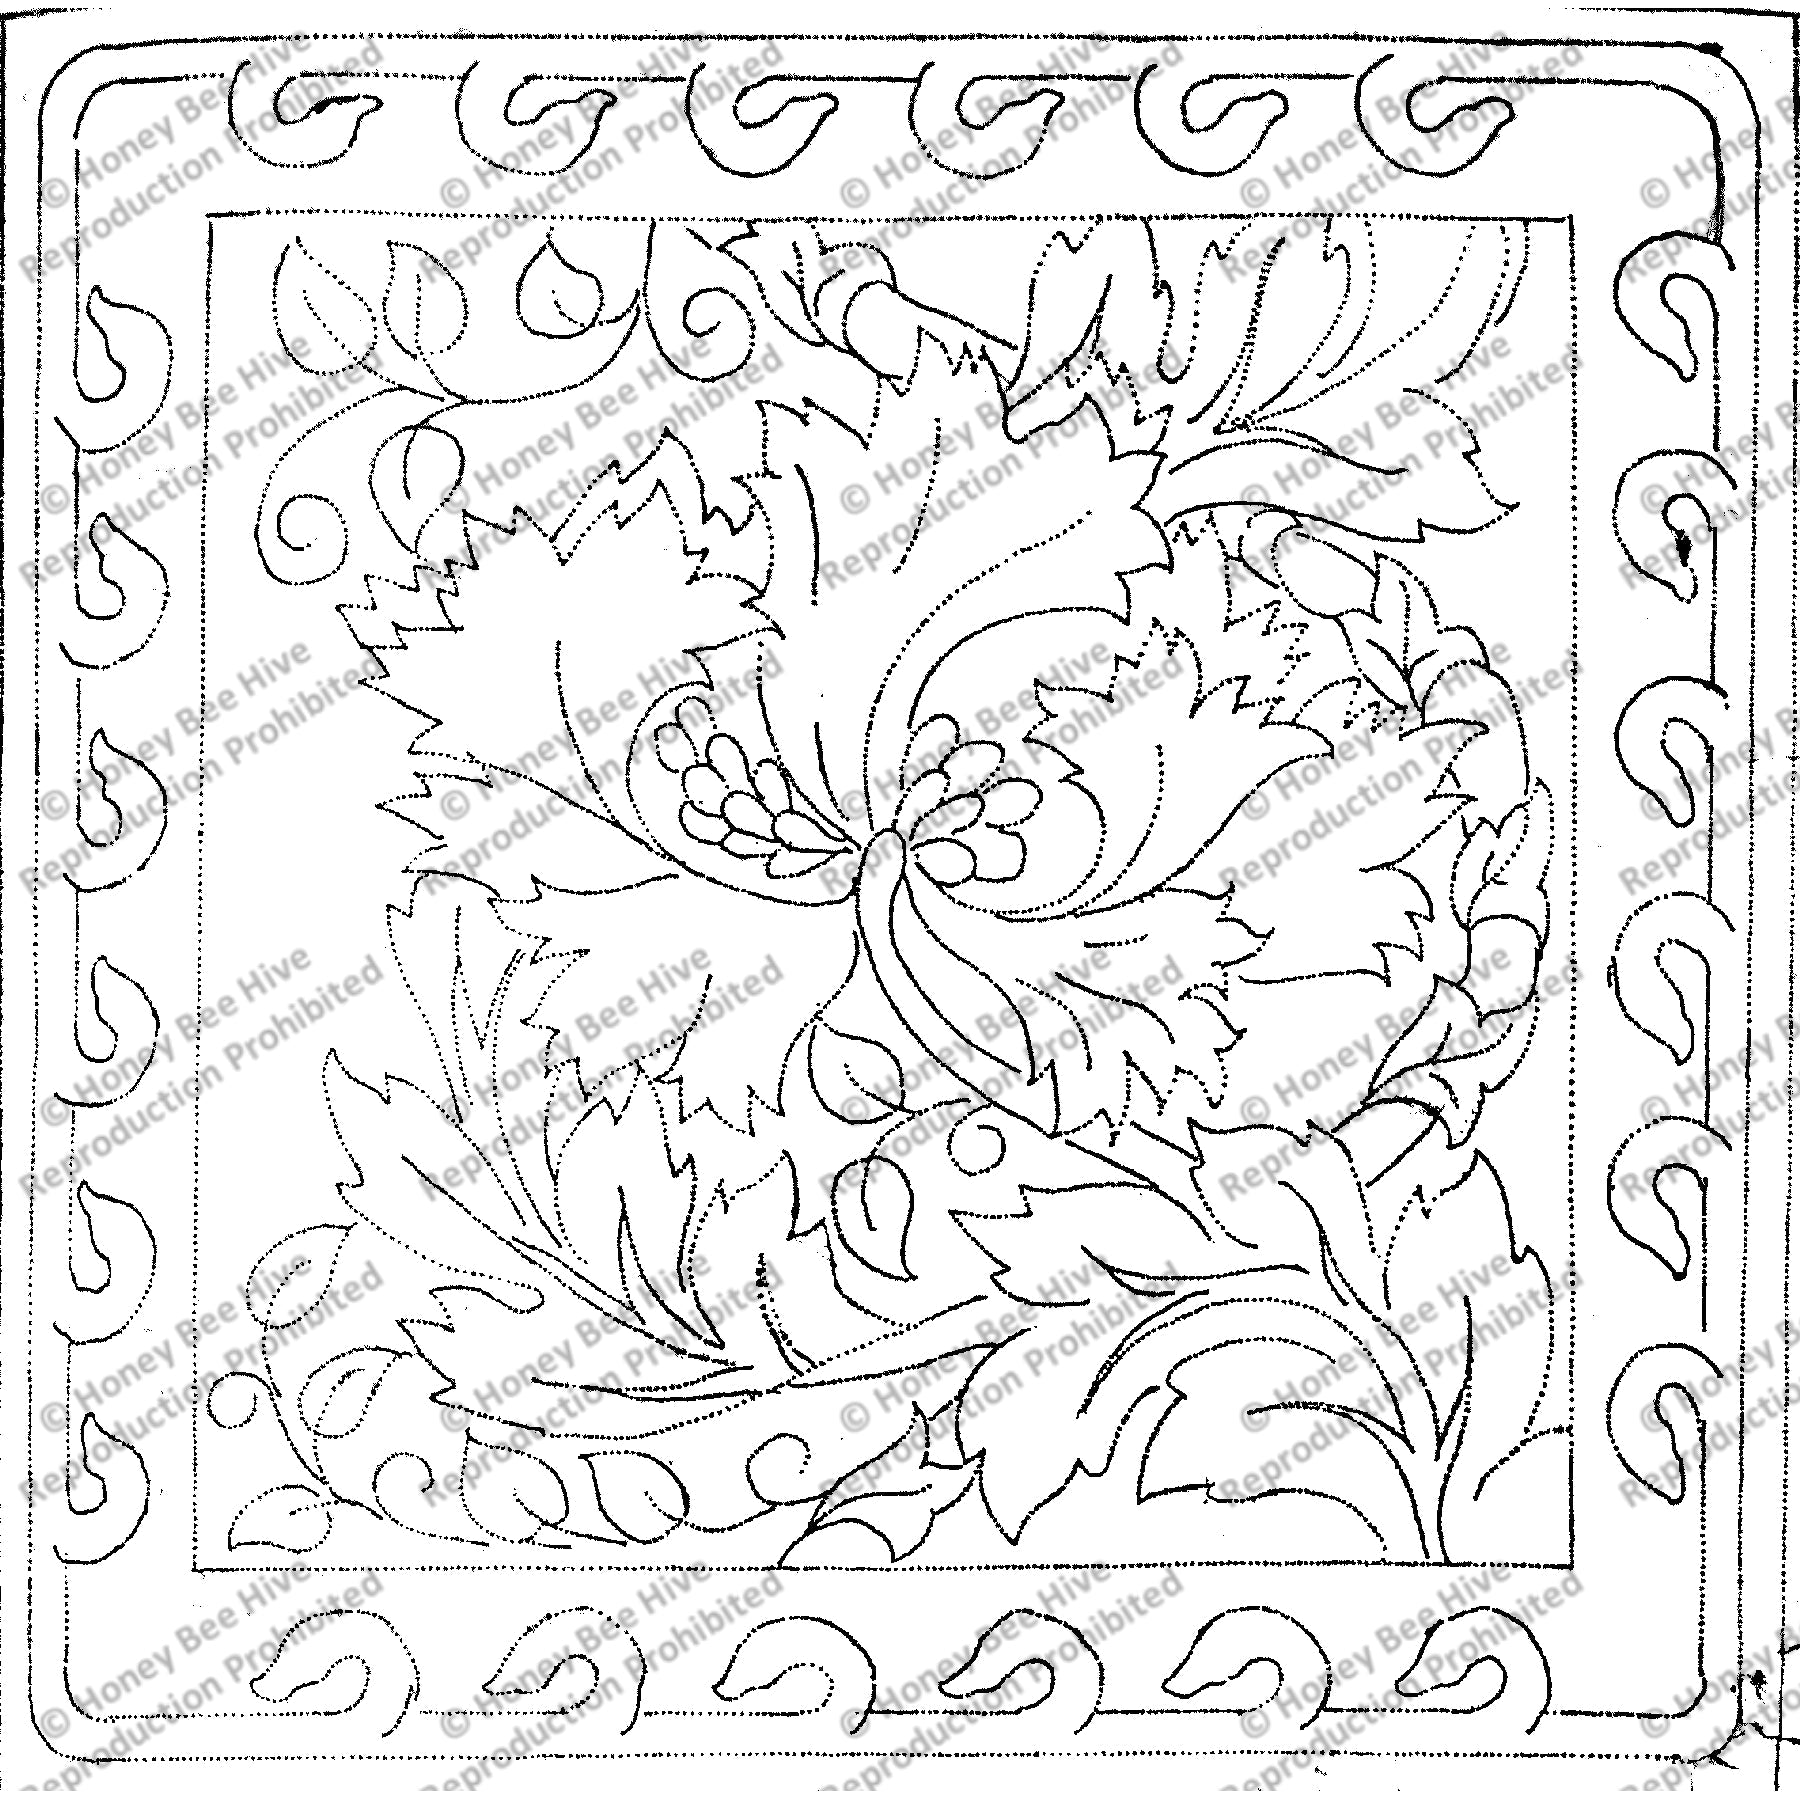 William Morris, rug hooking pattern